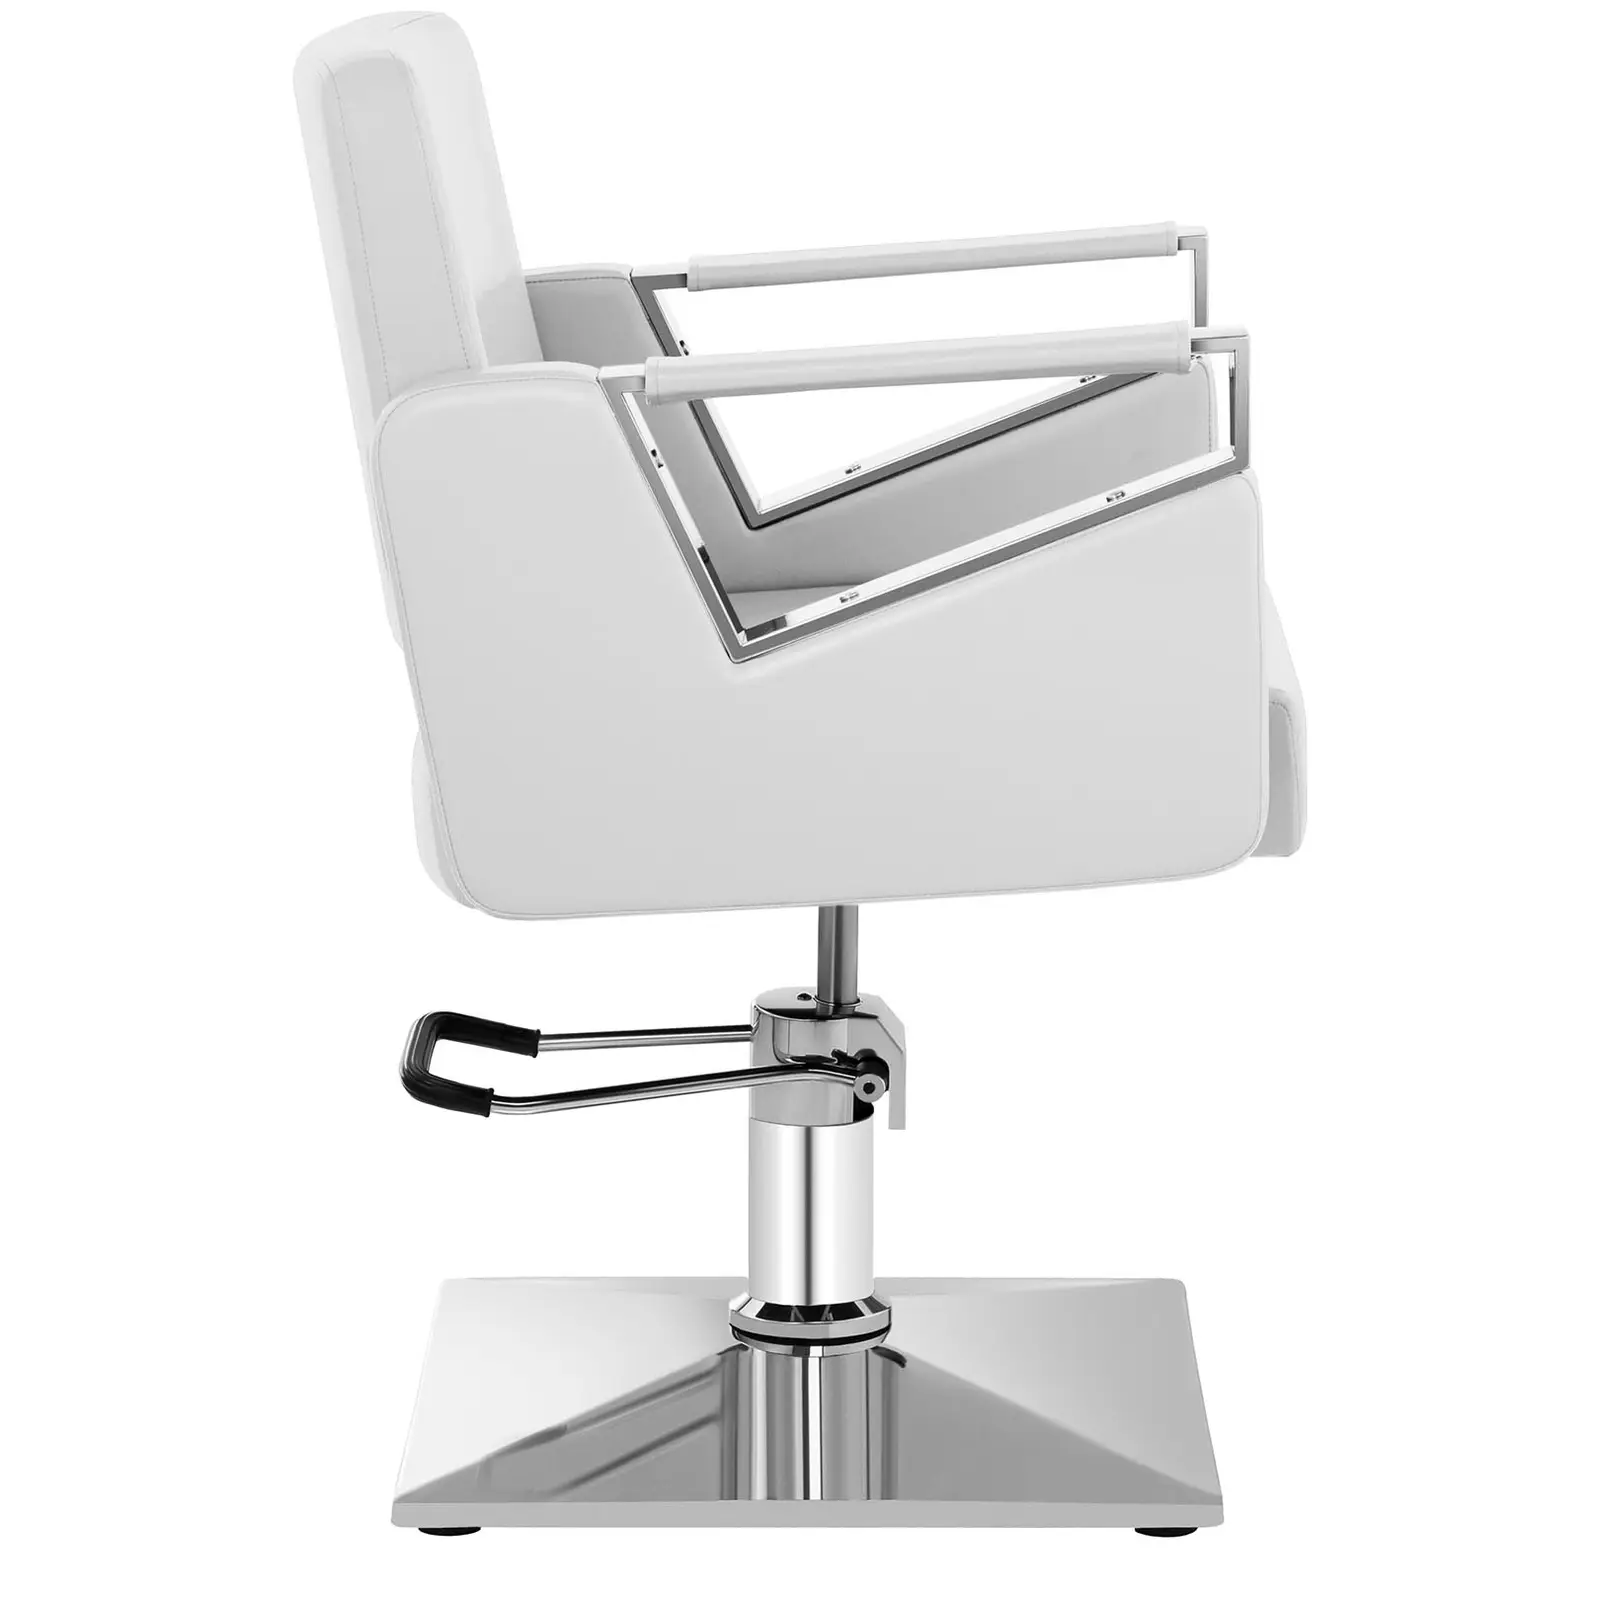 Fodrász szék - 445–550 mm - 200 kg - Mattfehér